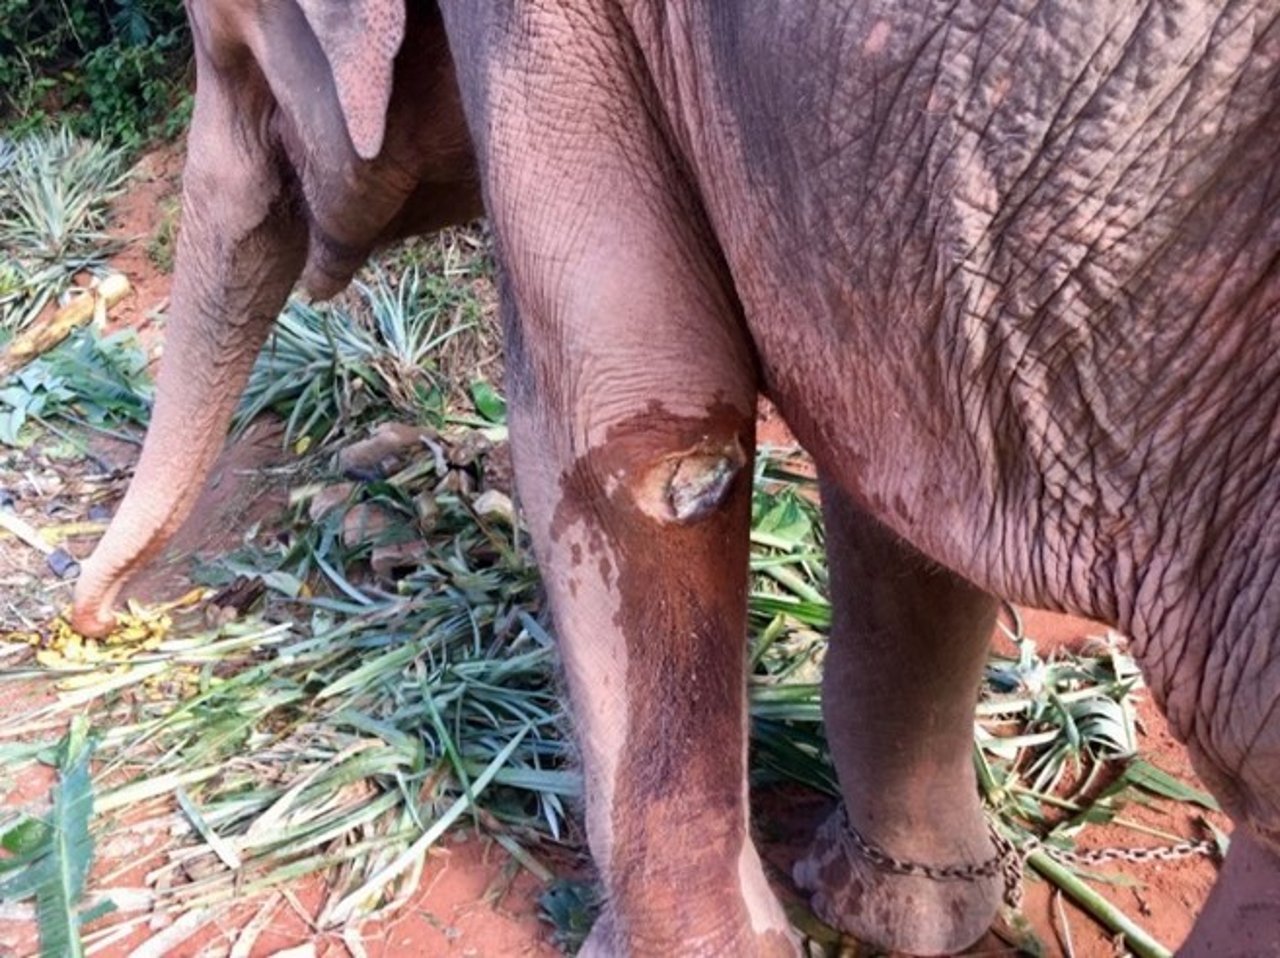 save elephant foundation 